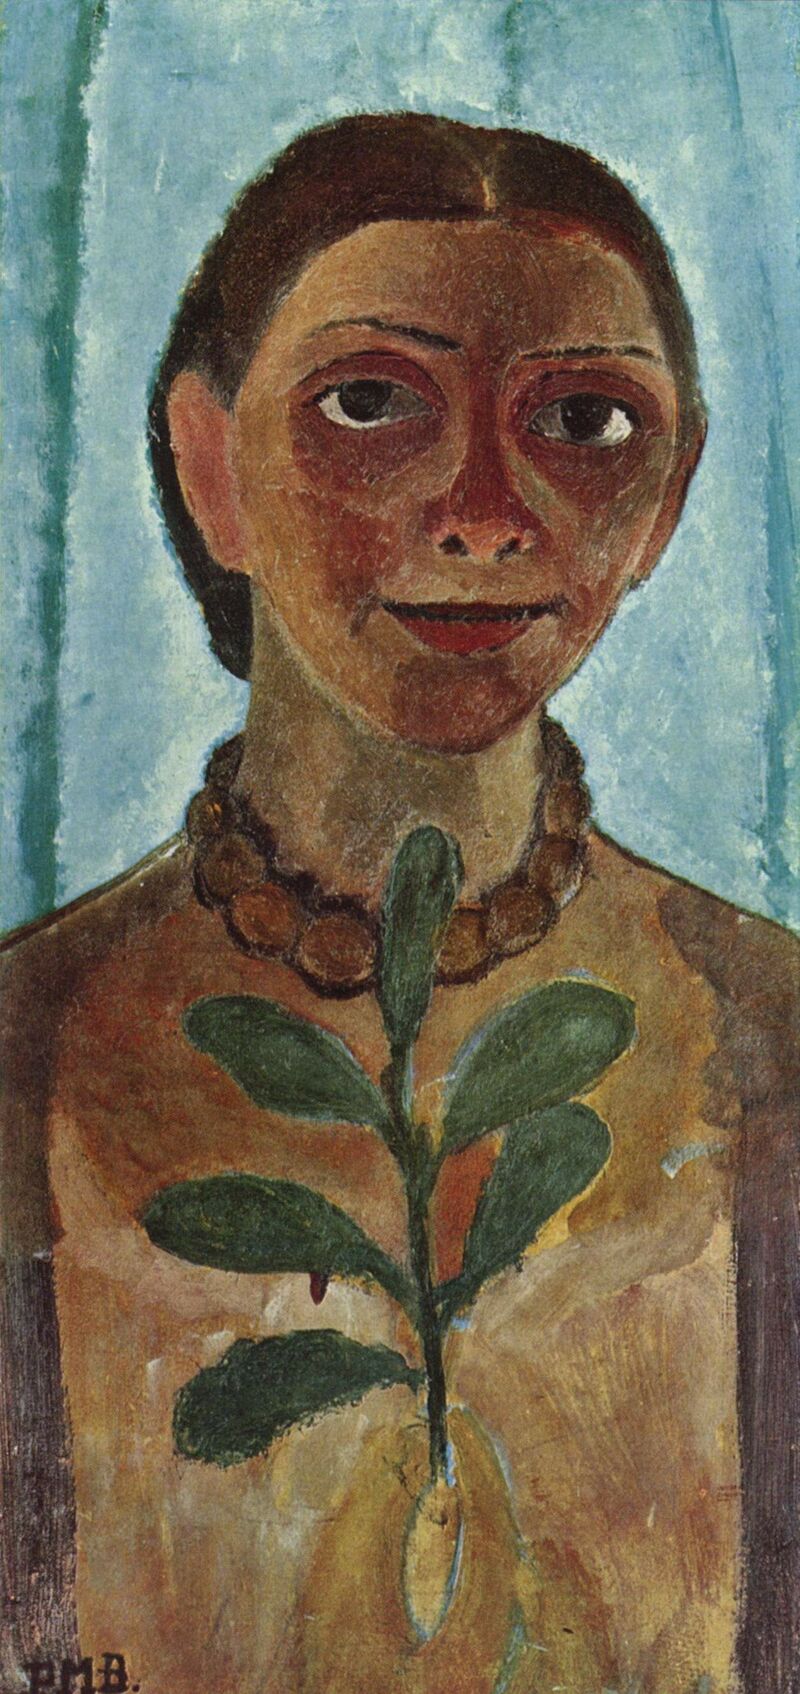 Self-portrait with a camellia branch scale comparison